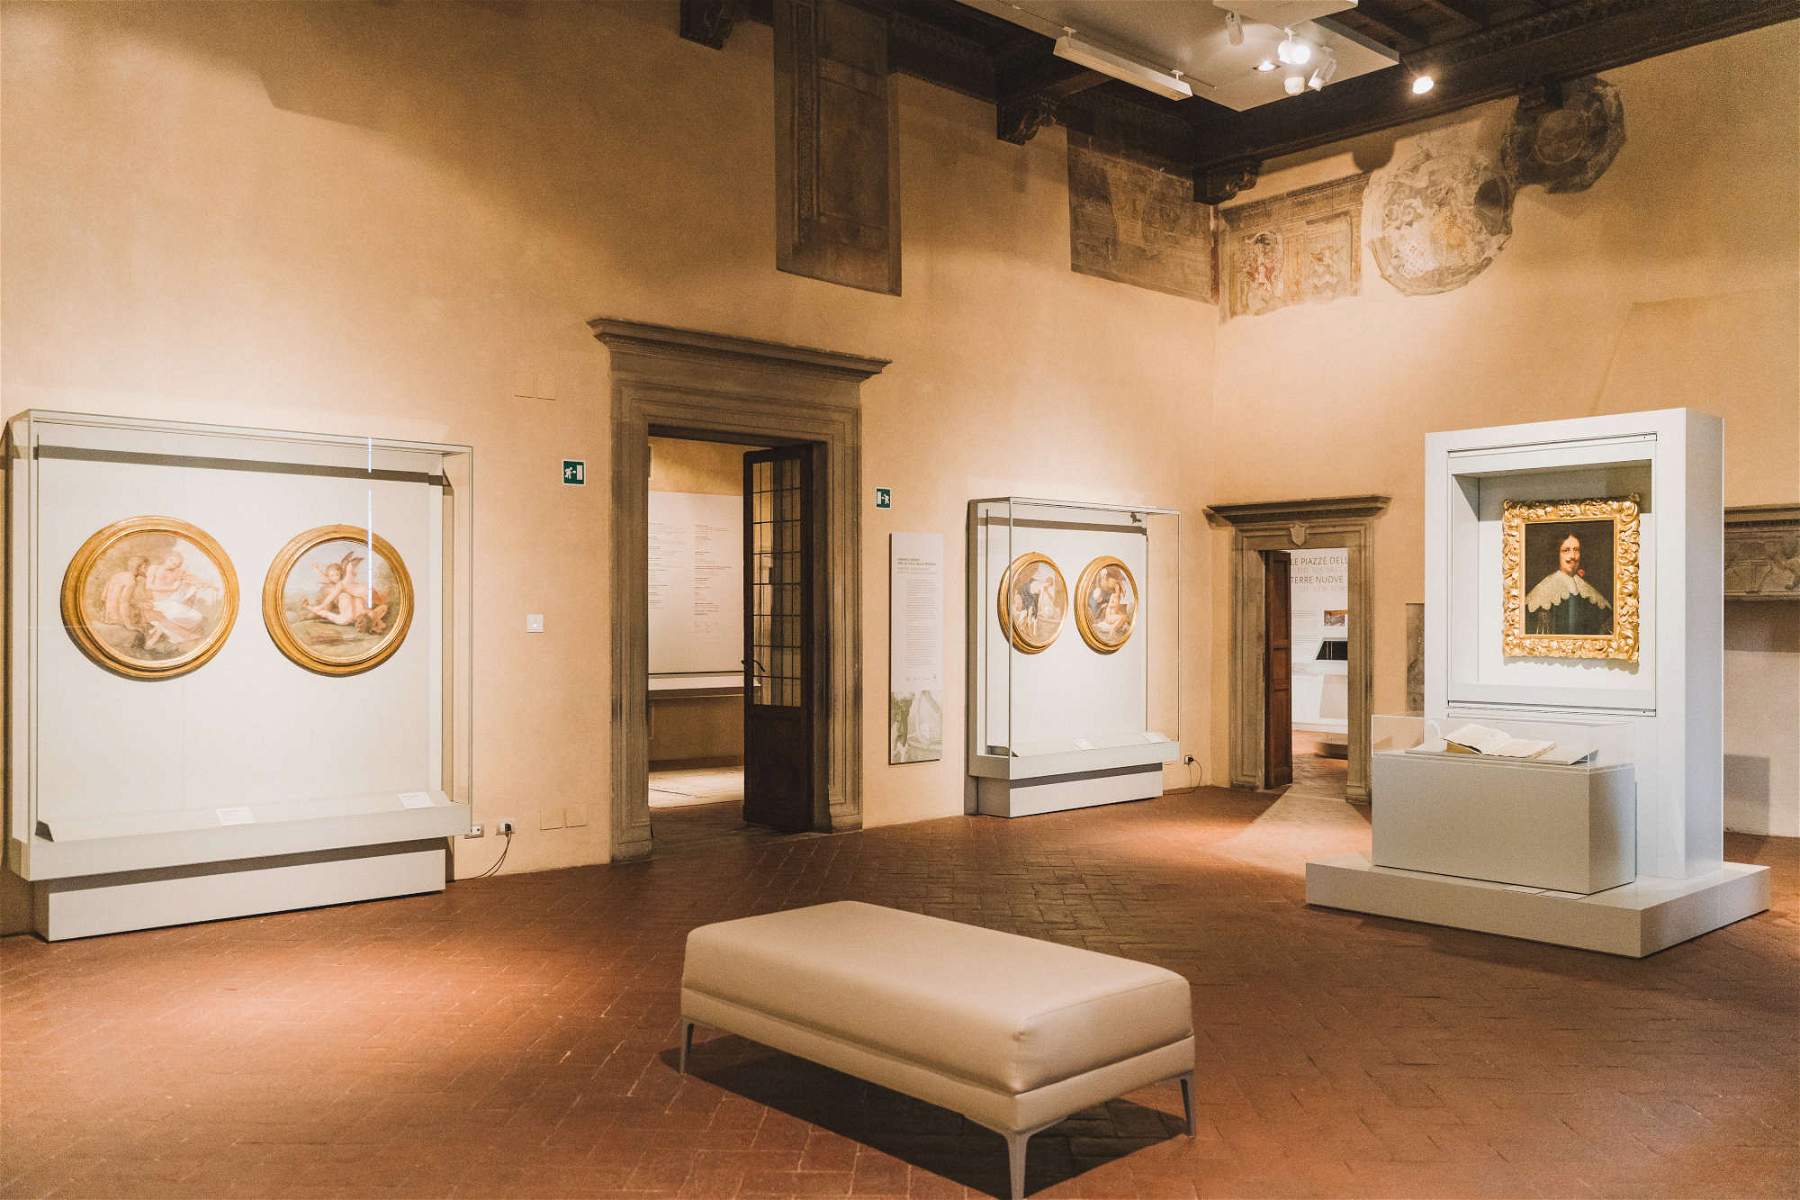 Uffizi Diffusi dedicates an exhibition to Giovanni da San Giovanni in his Valdarno